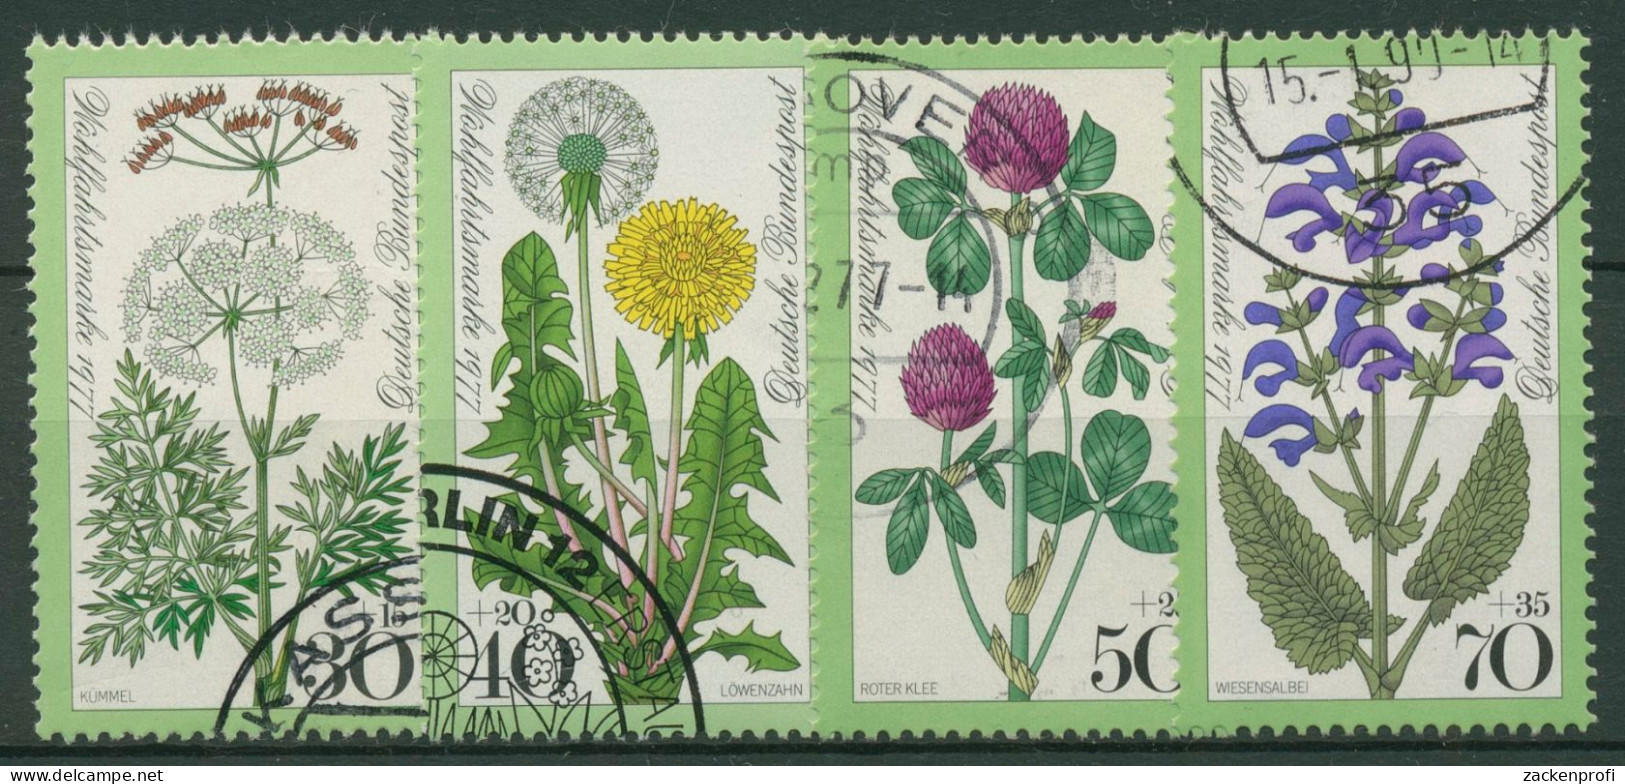 Bund 1977 Pflanzen Blumen Wiesenblumen 949/52 Gestempelt - Usados